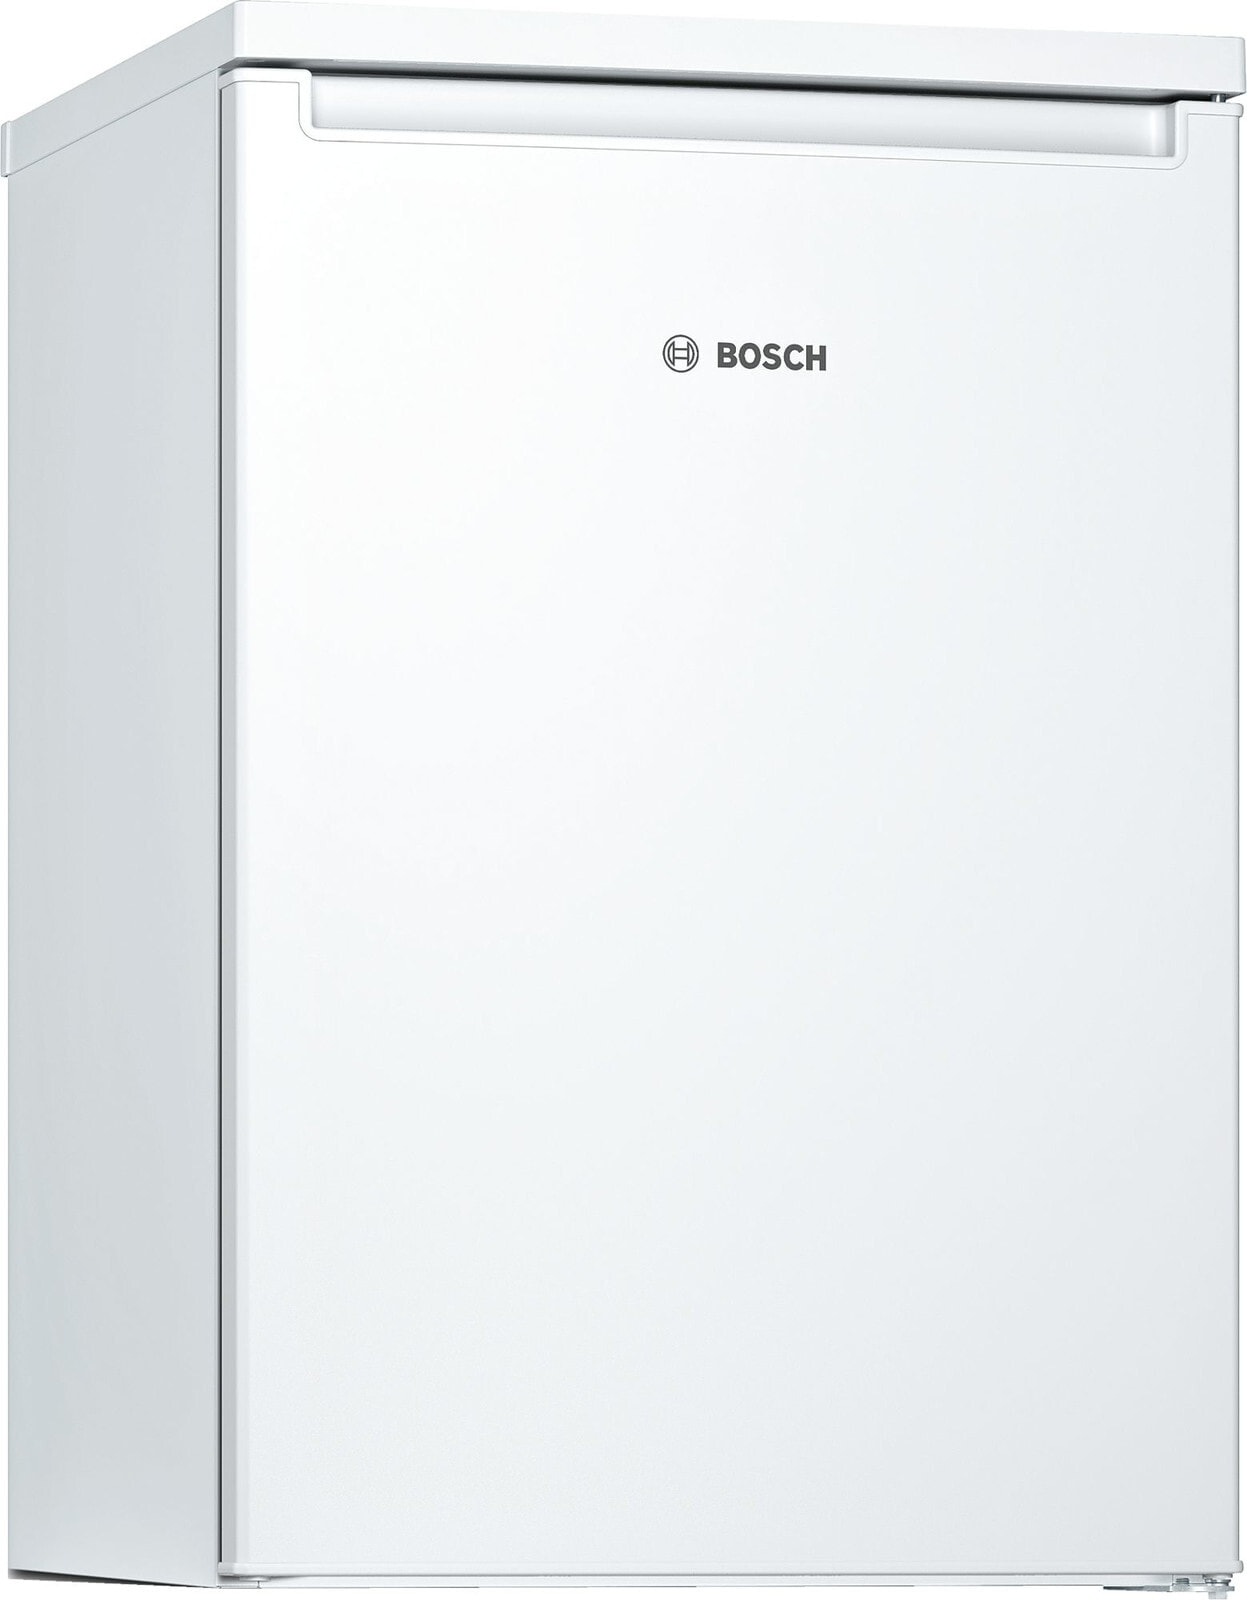 Bosch Serie 2 KTR15NWFA холодильник Отдельно стоящий Белый 135 L A++